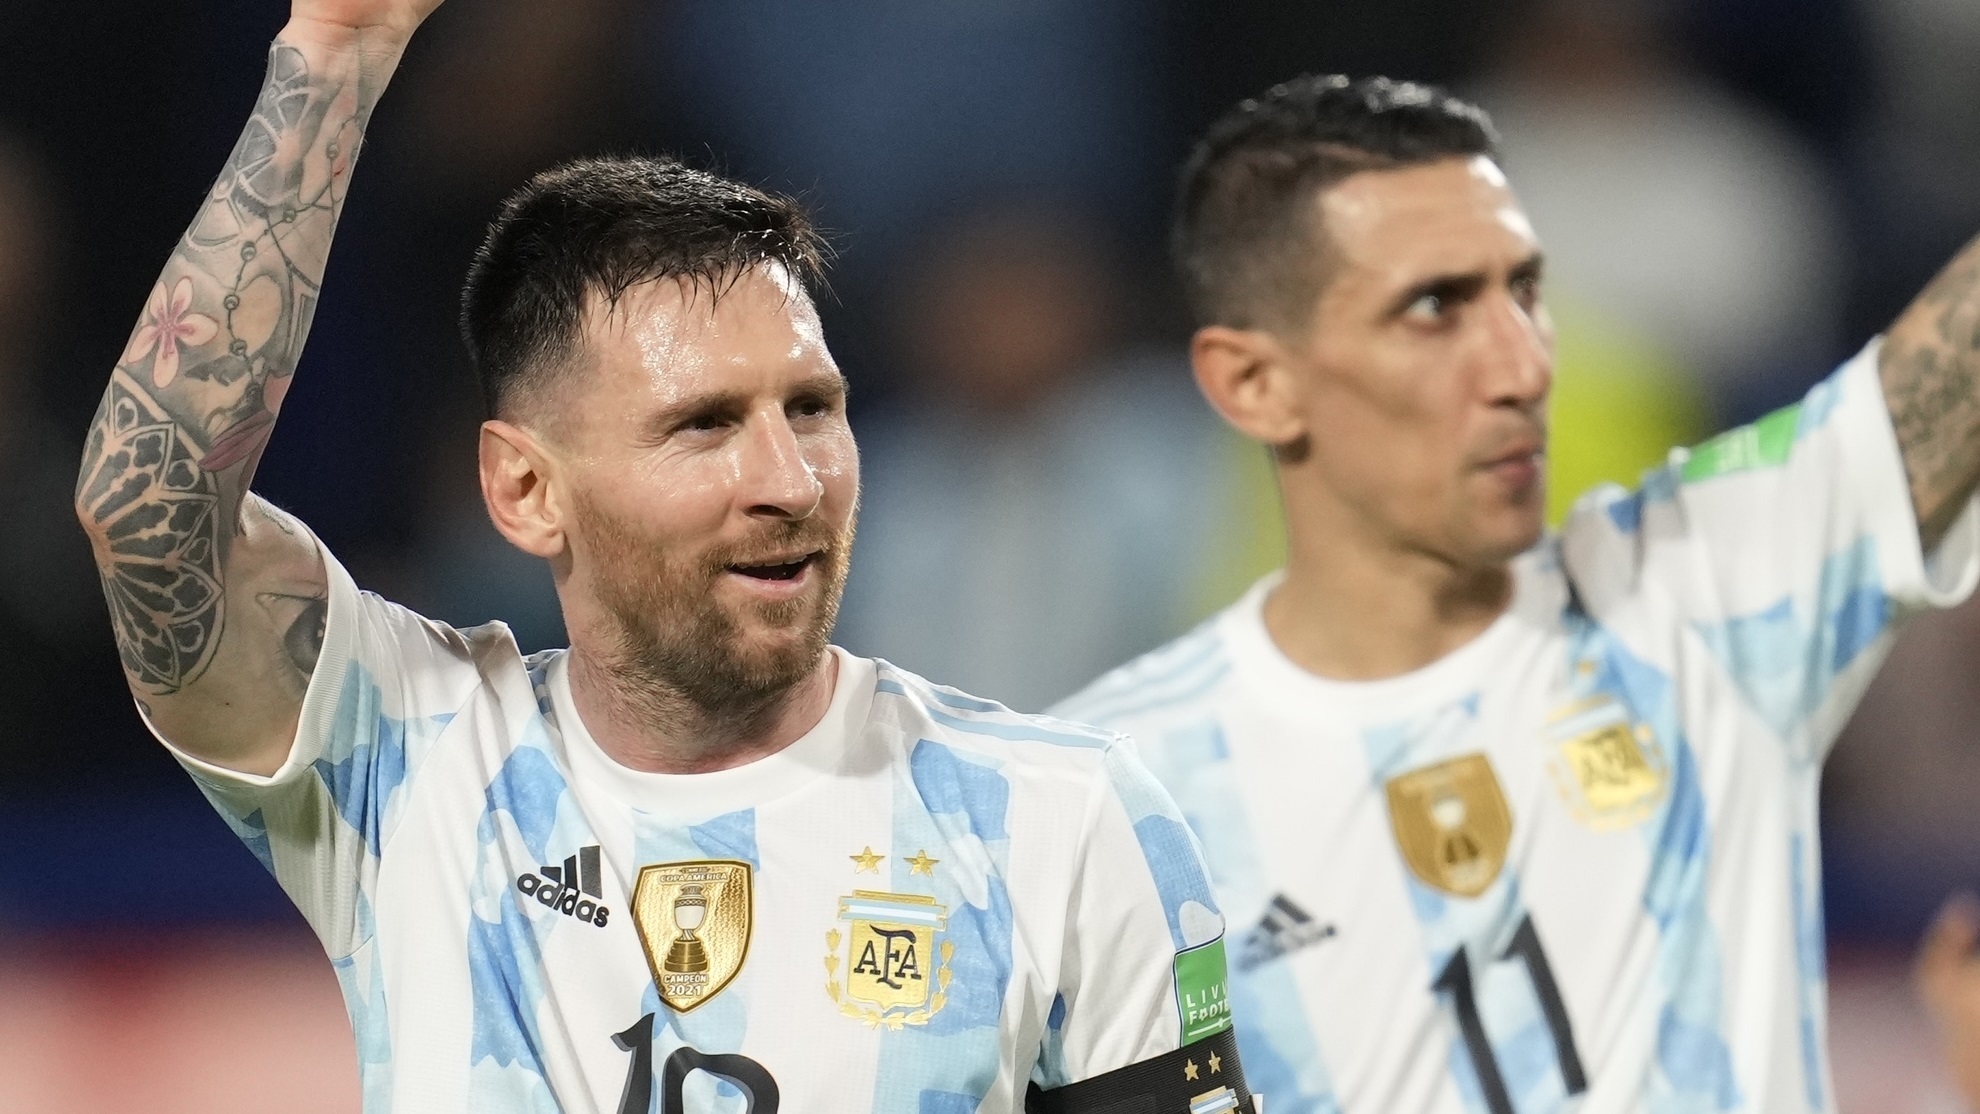 Những khoảnh khắc đáng nhớ của Messi khi trở về Argentina chắc chắn sẽ khiến bạn ngỡ ngàng và khâm phục ông hoàng bóng đá thế giới này. Hãy cùng chào đón anh trở lại quê nhà và cùng nhau chứng kiến sức mạnh của anh trên sân.